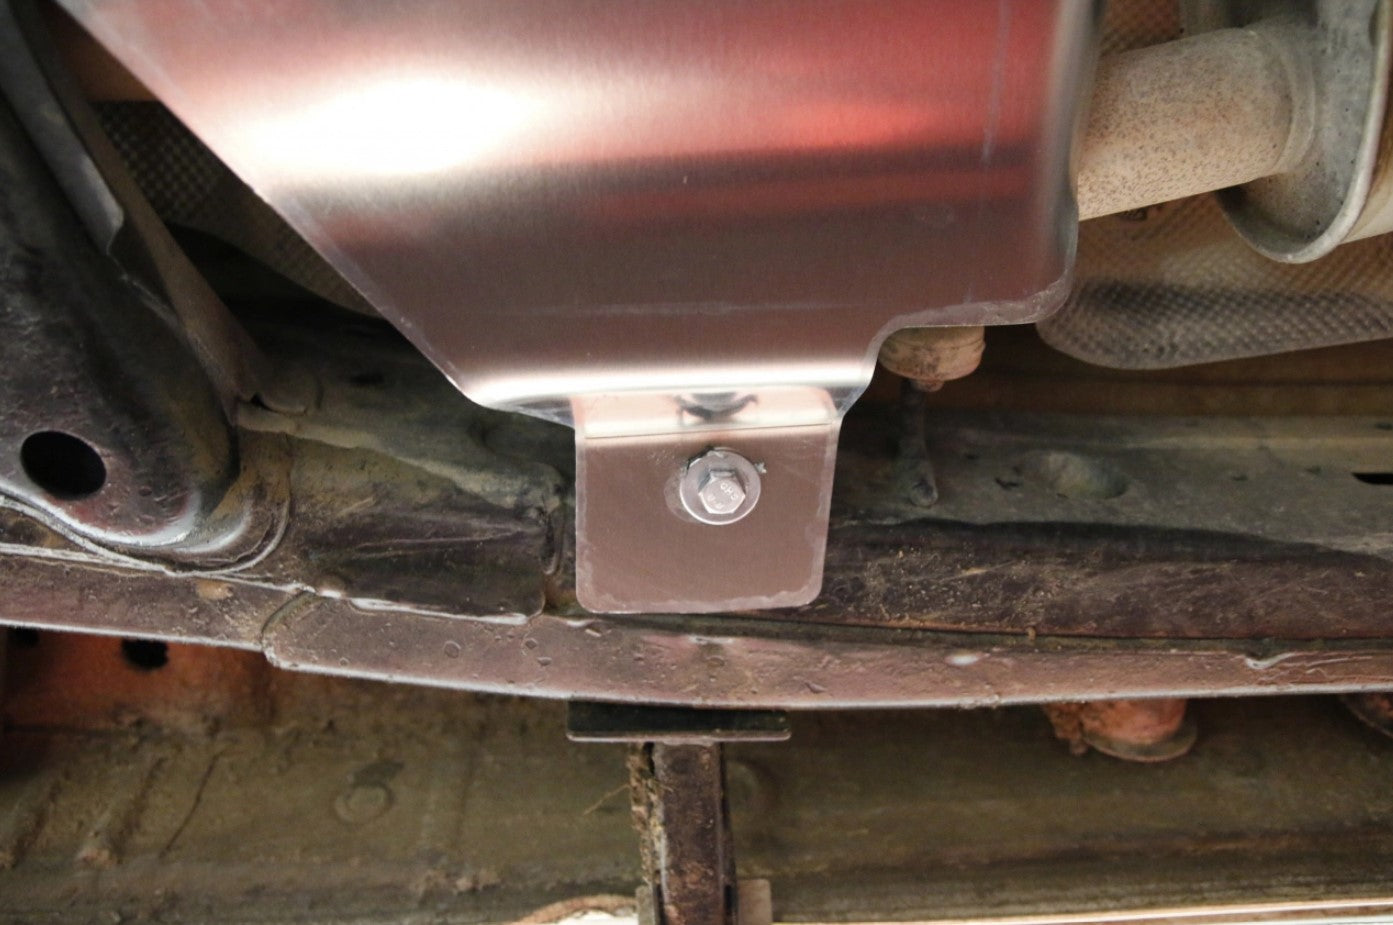 di una protezione in alluminio imbullonata alla parte inferiore del veicolo.